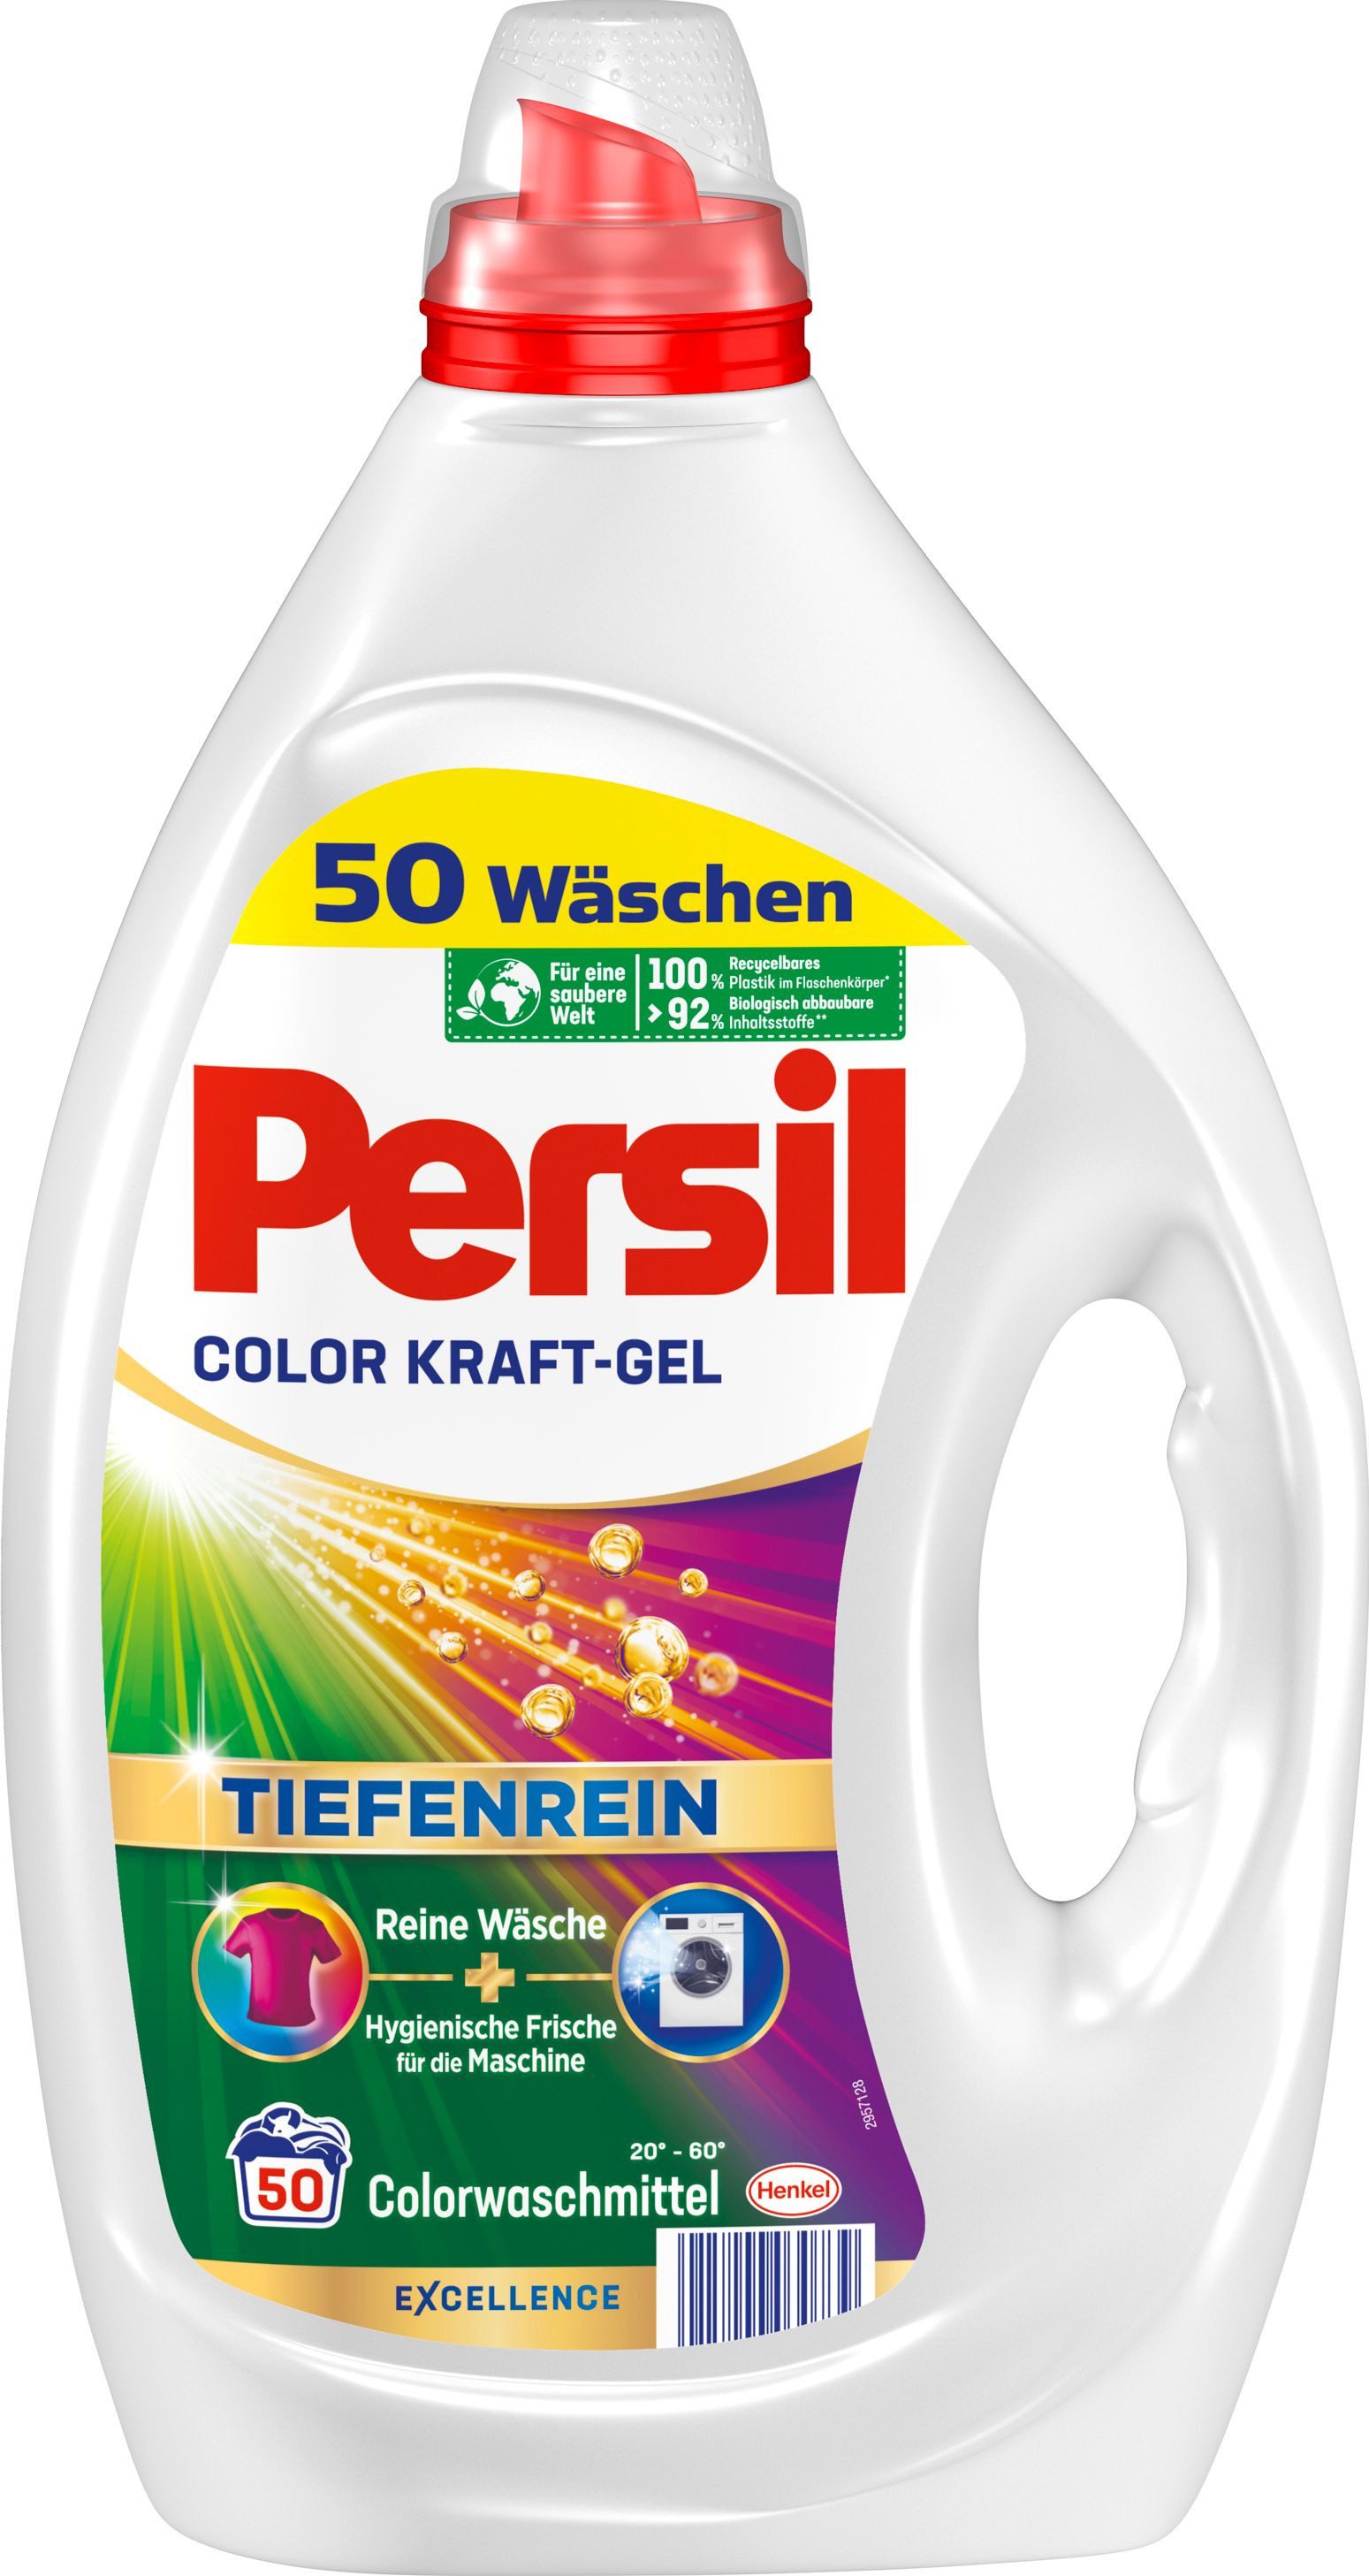 Persil Color Kraft-Gel 50 WL Colorwaschmittel (1-St. Flüssigwaschmittel mit Tiefenrein Technologie)